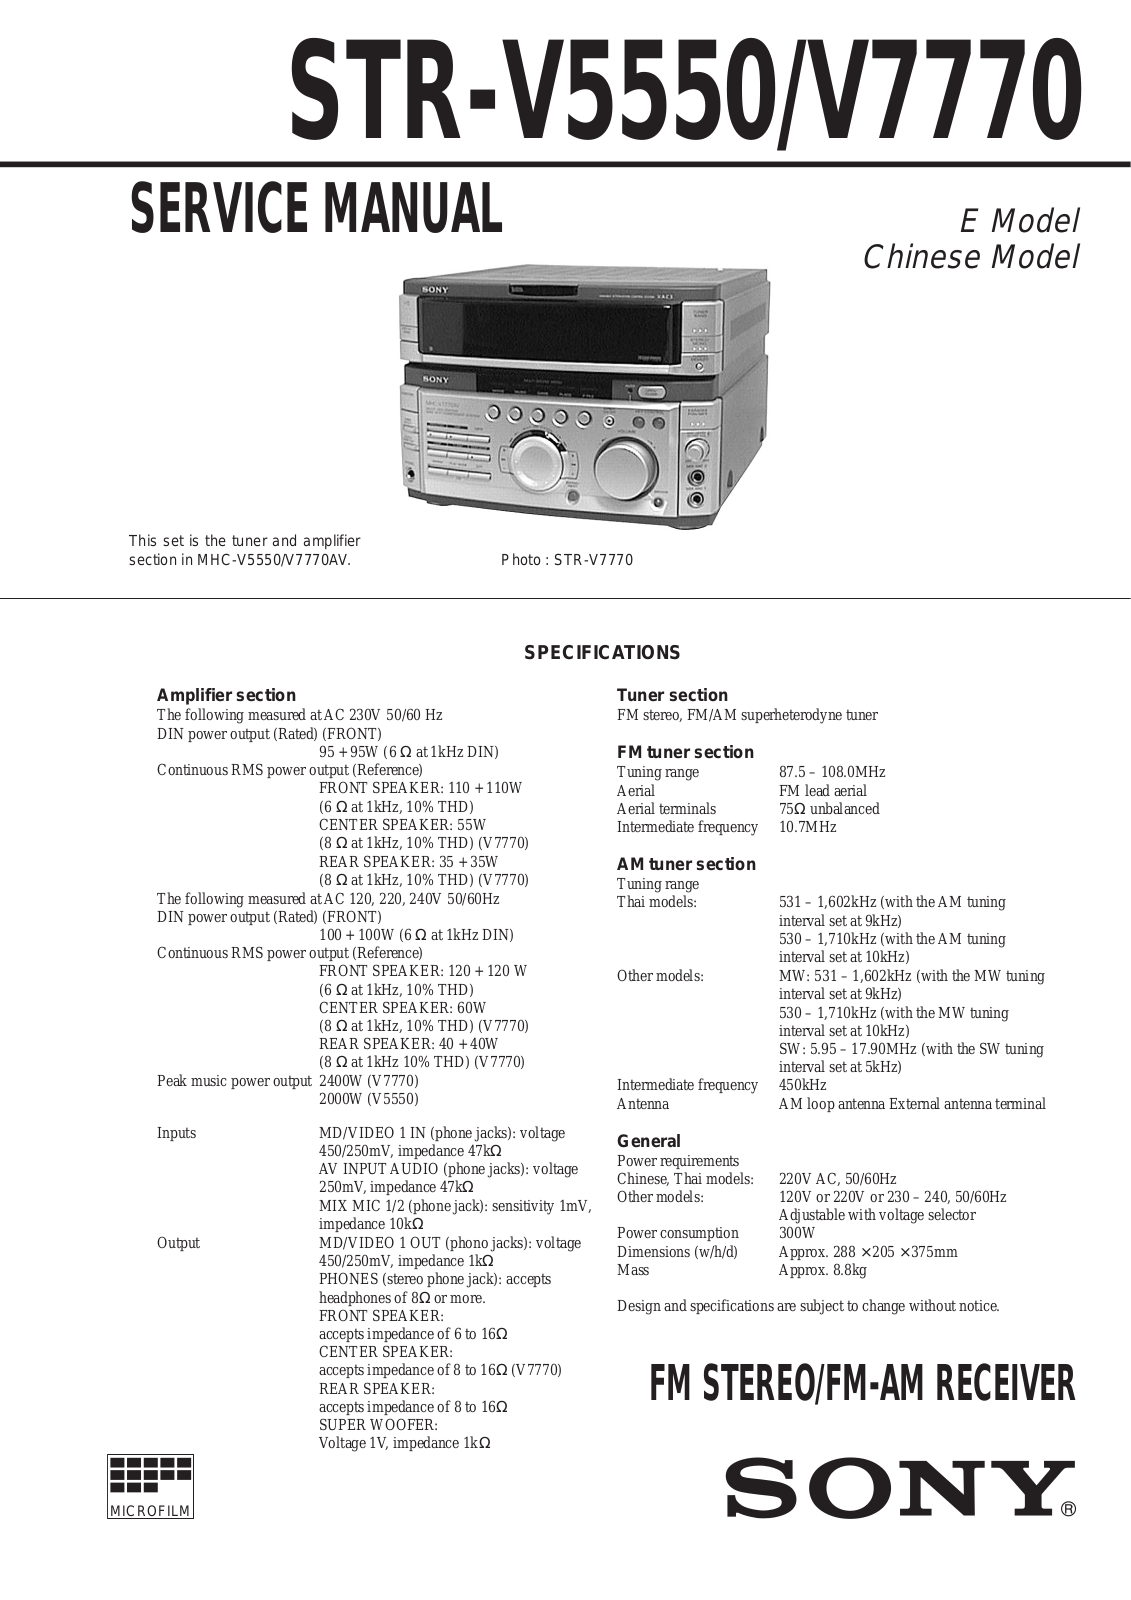 Sony STR-V5550, STR-V7770 Service Manual